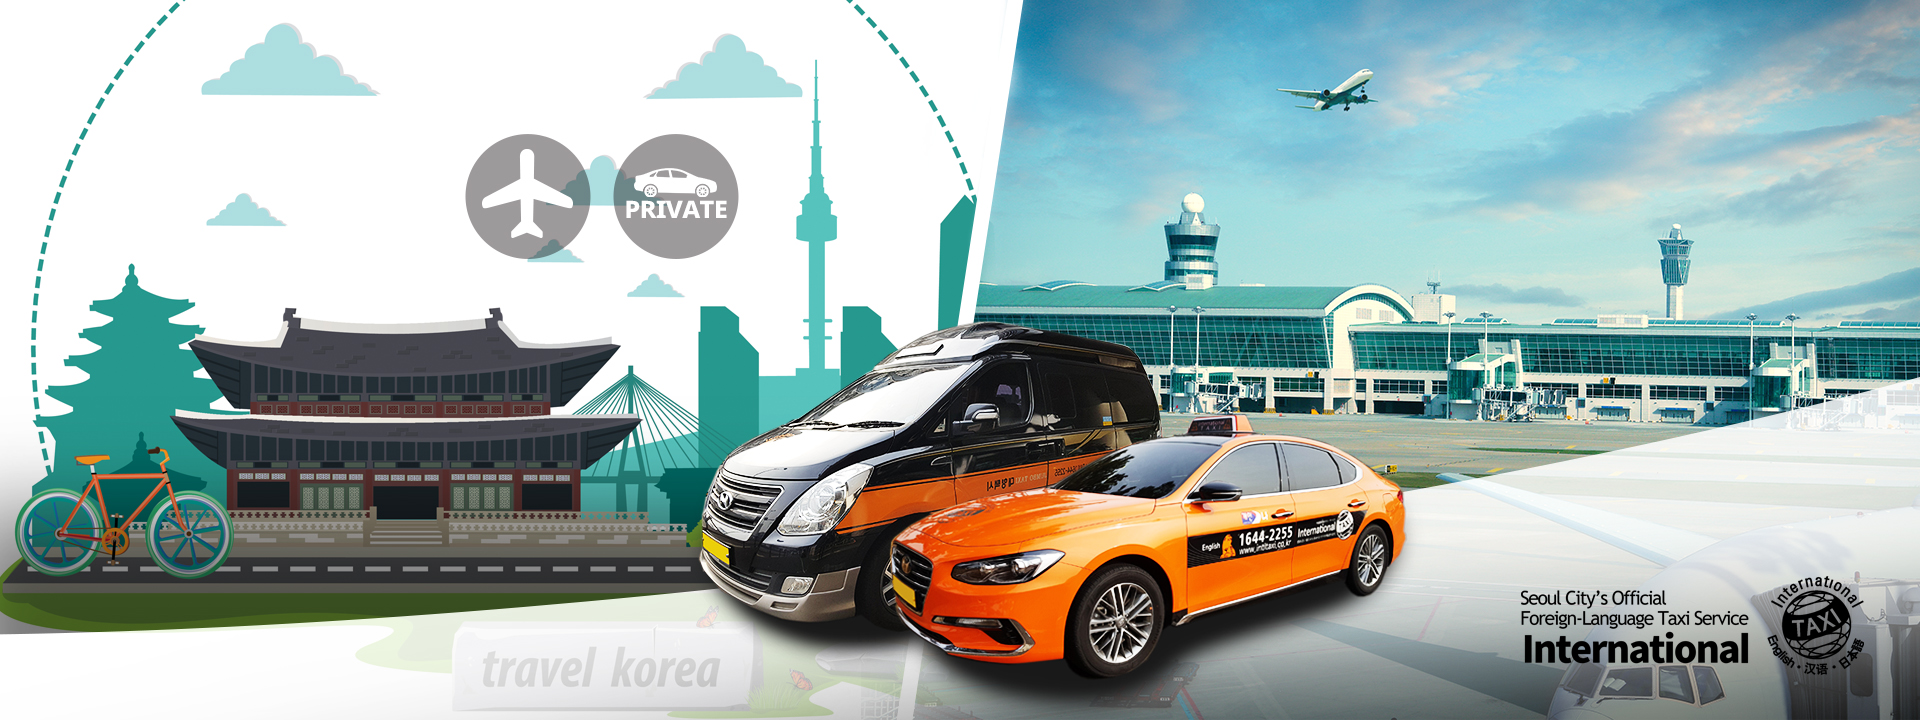 首爾仁川機場往返首爾市區出租車接送